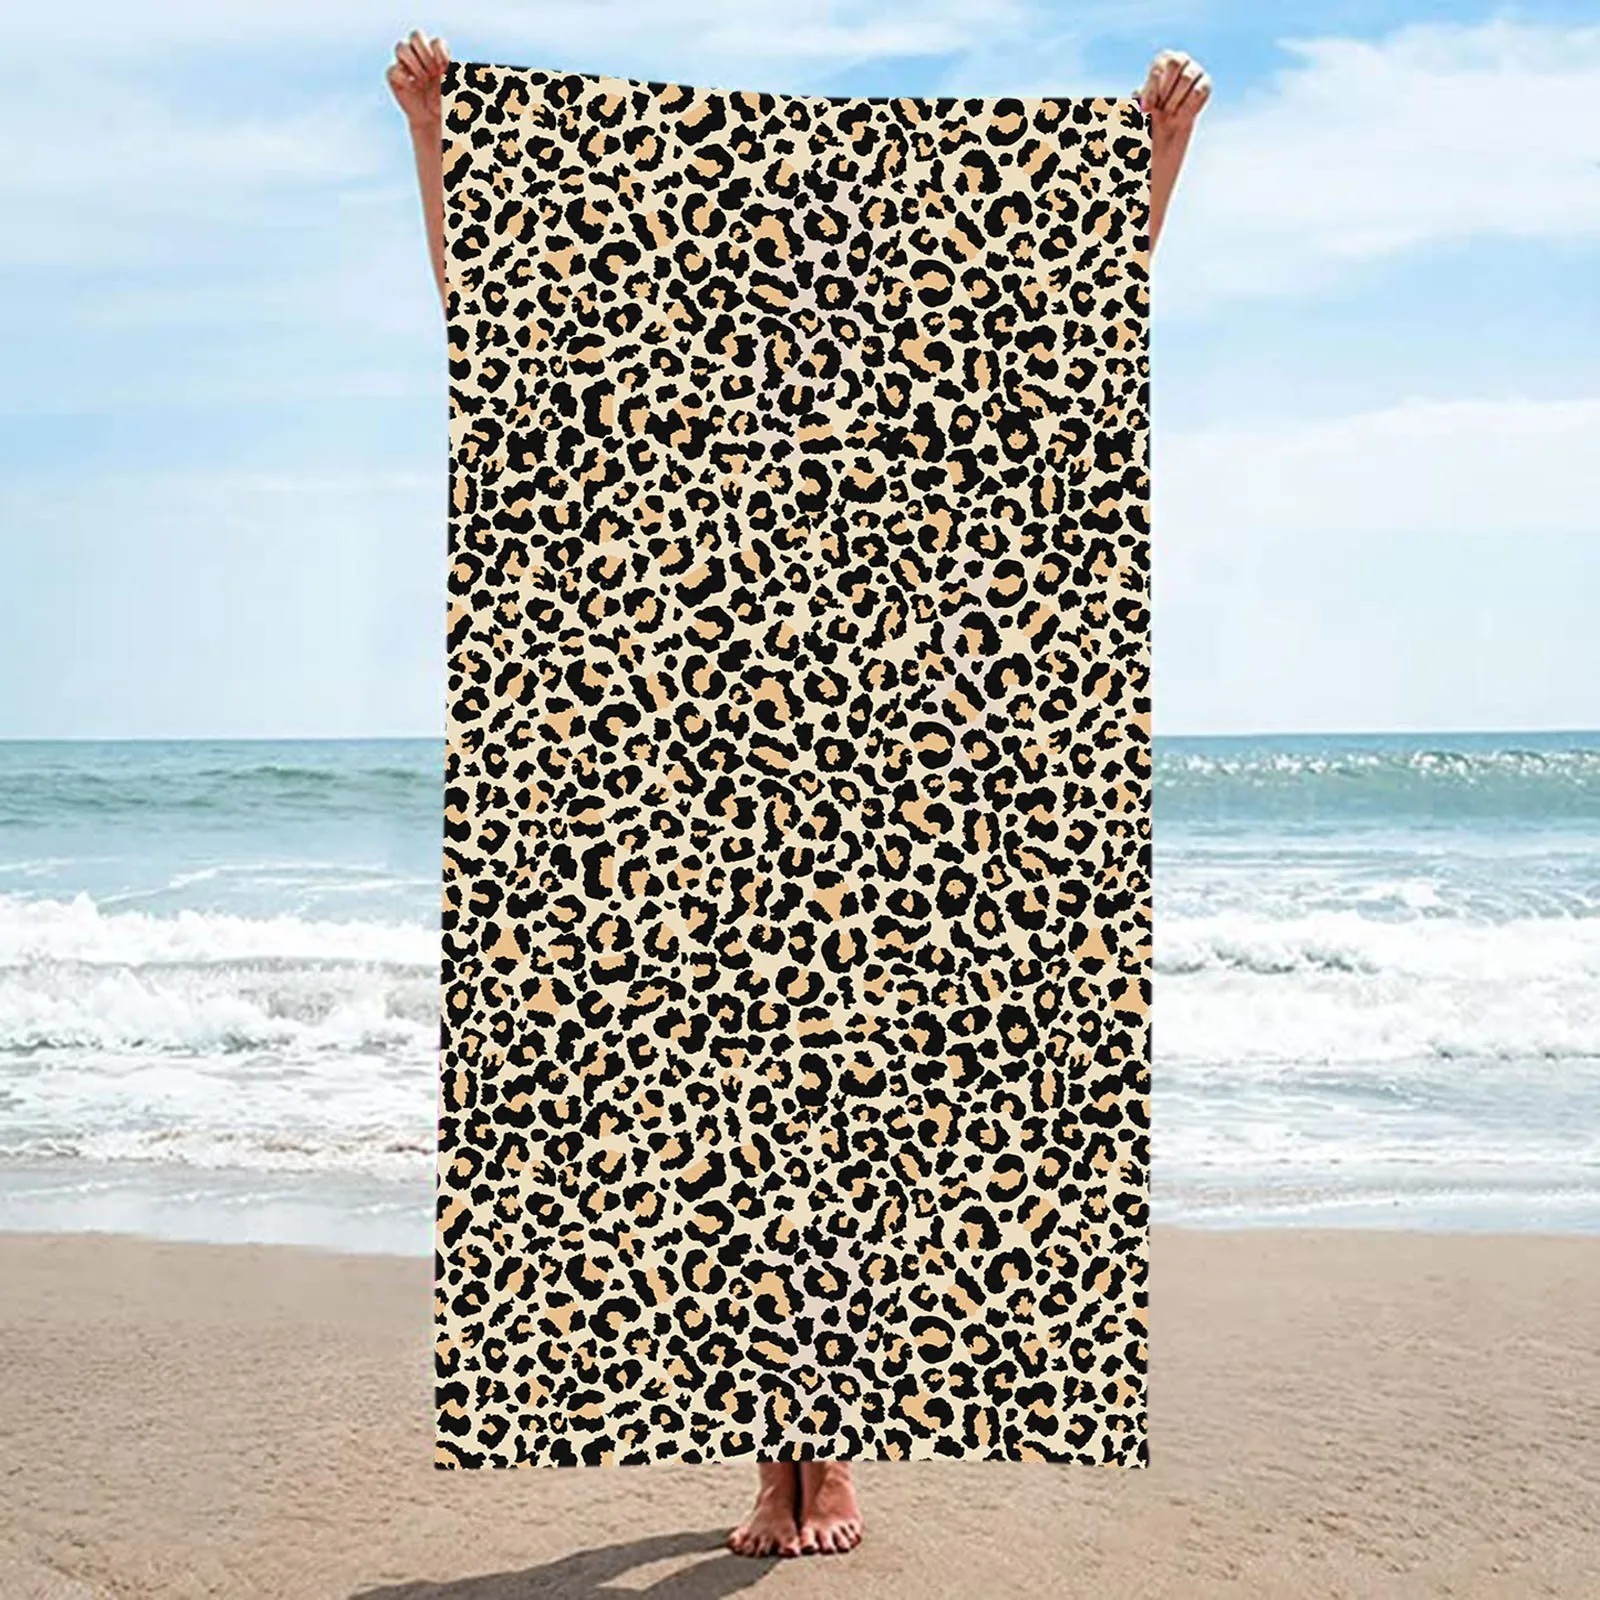 

Пляжное полотенце из микрофибры, банное полотенце с леопардовым рисунком, пляжное полотенце с защитой от песка, мужское полотенце для ванной, коврик, полотенце темно-синего цвета